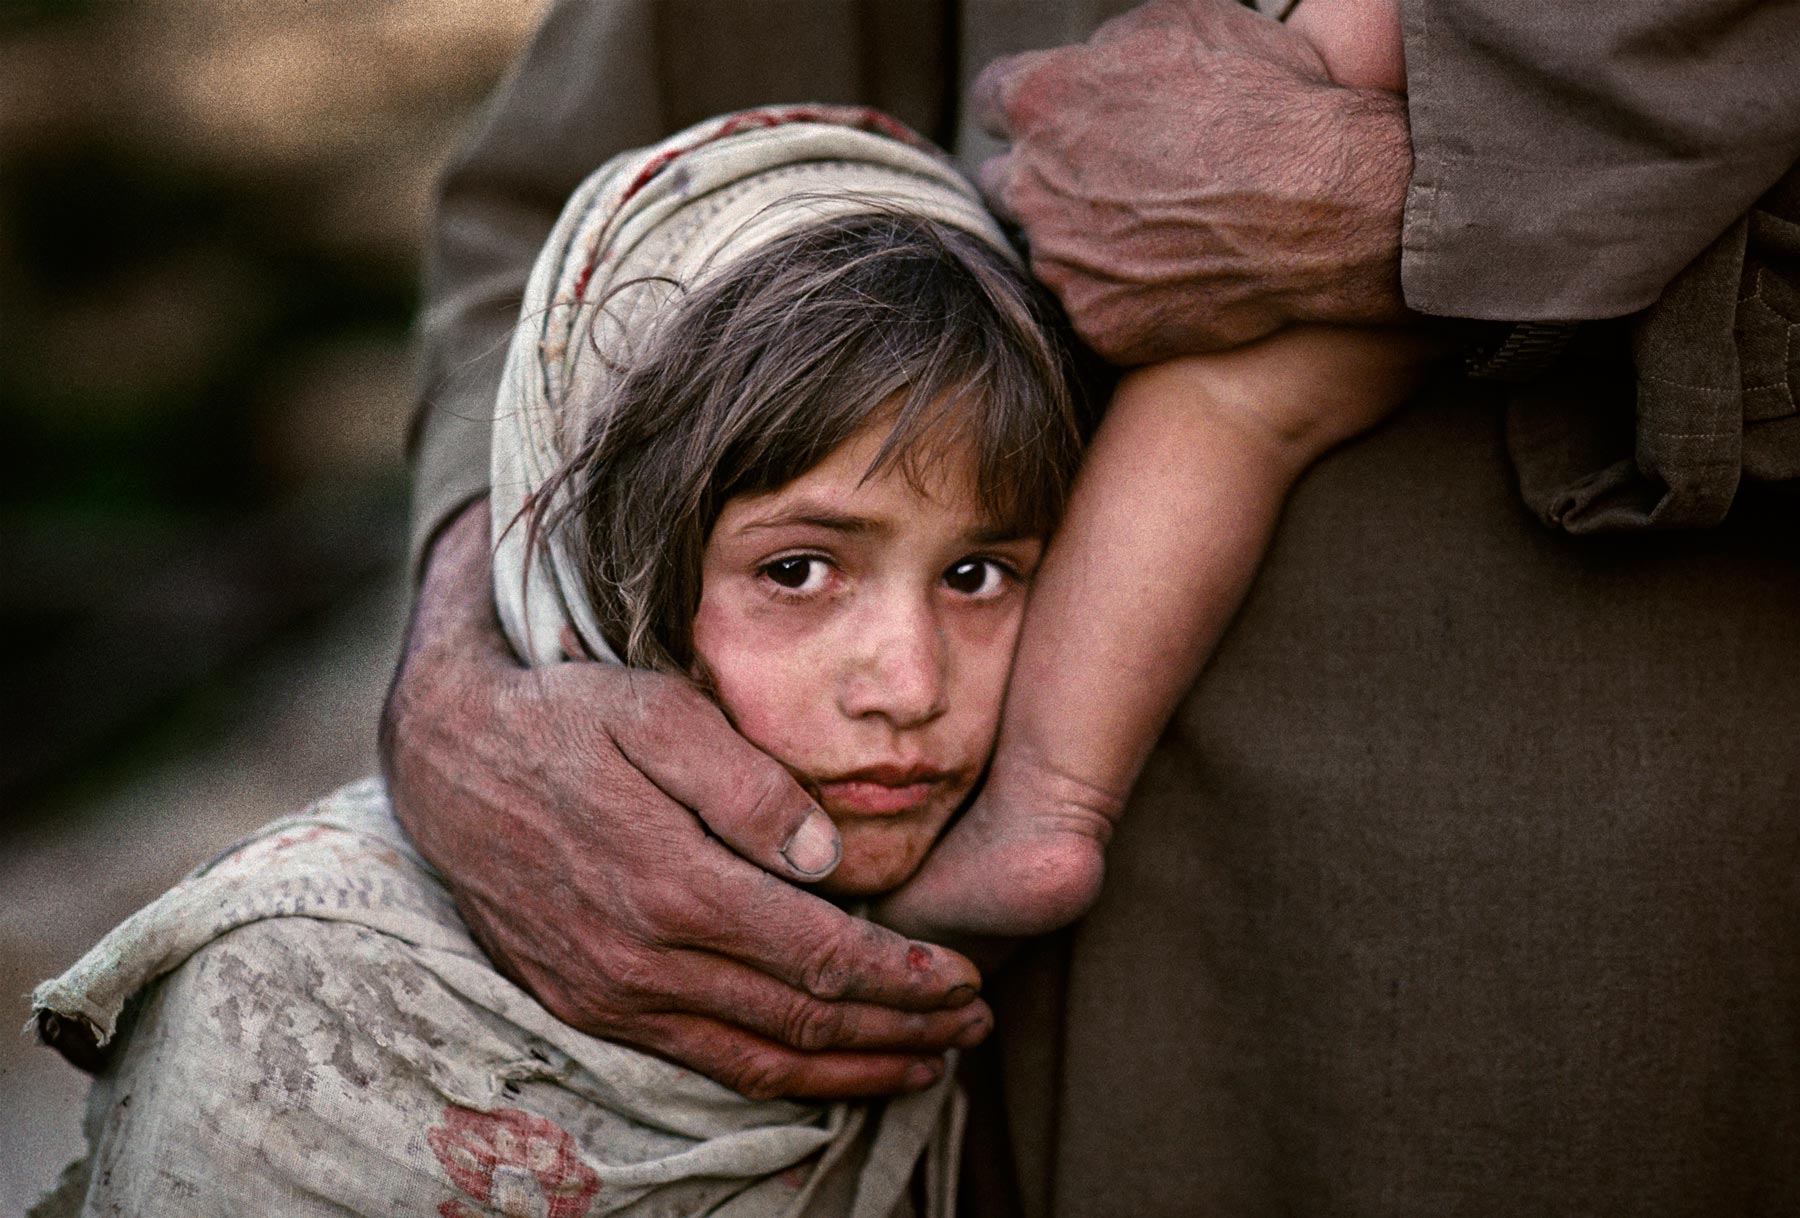  令人心碎的眼睛，卡扎巴德，阿富汗。来自摄影师Steve McCurry。 